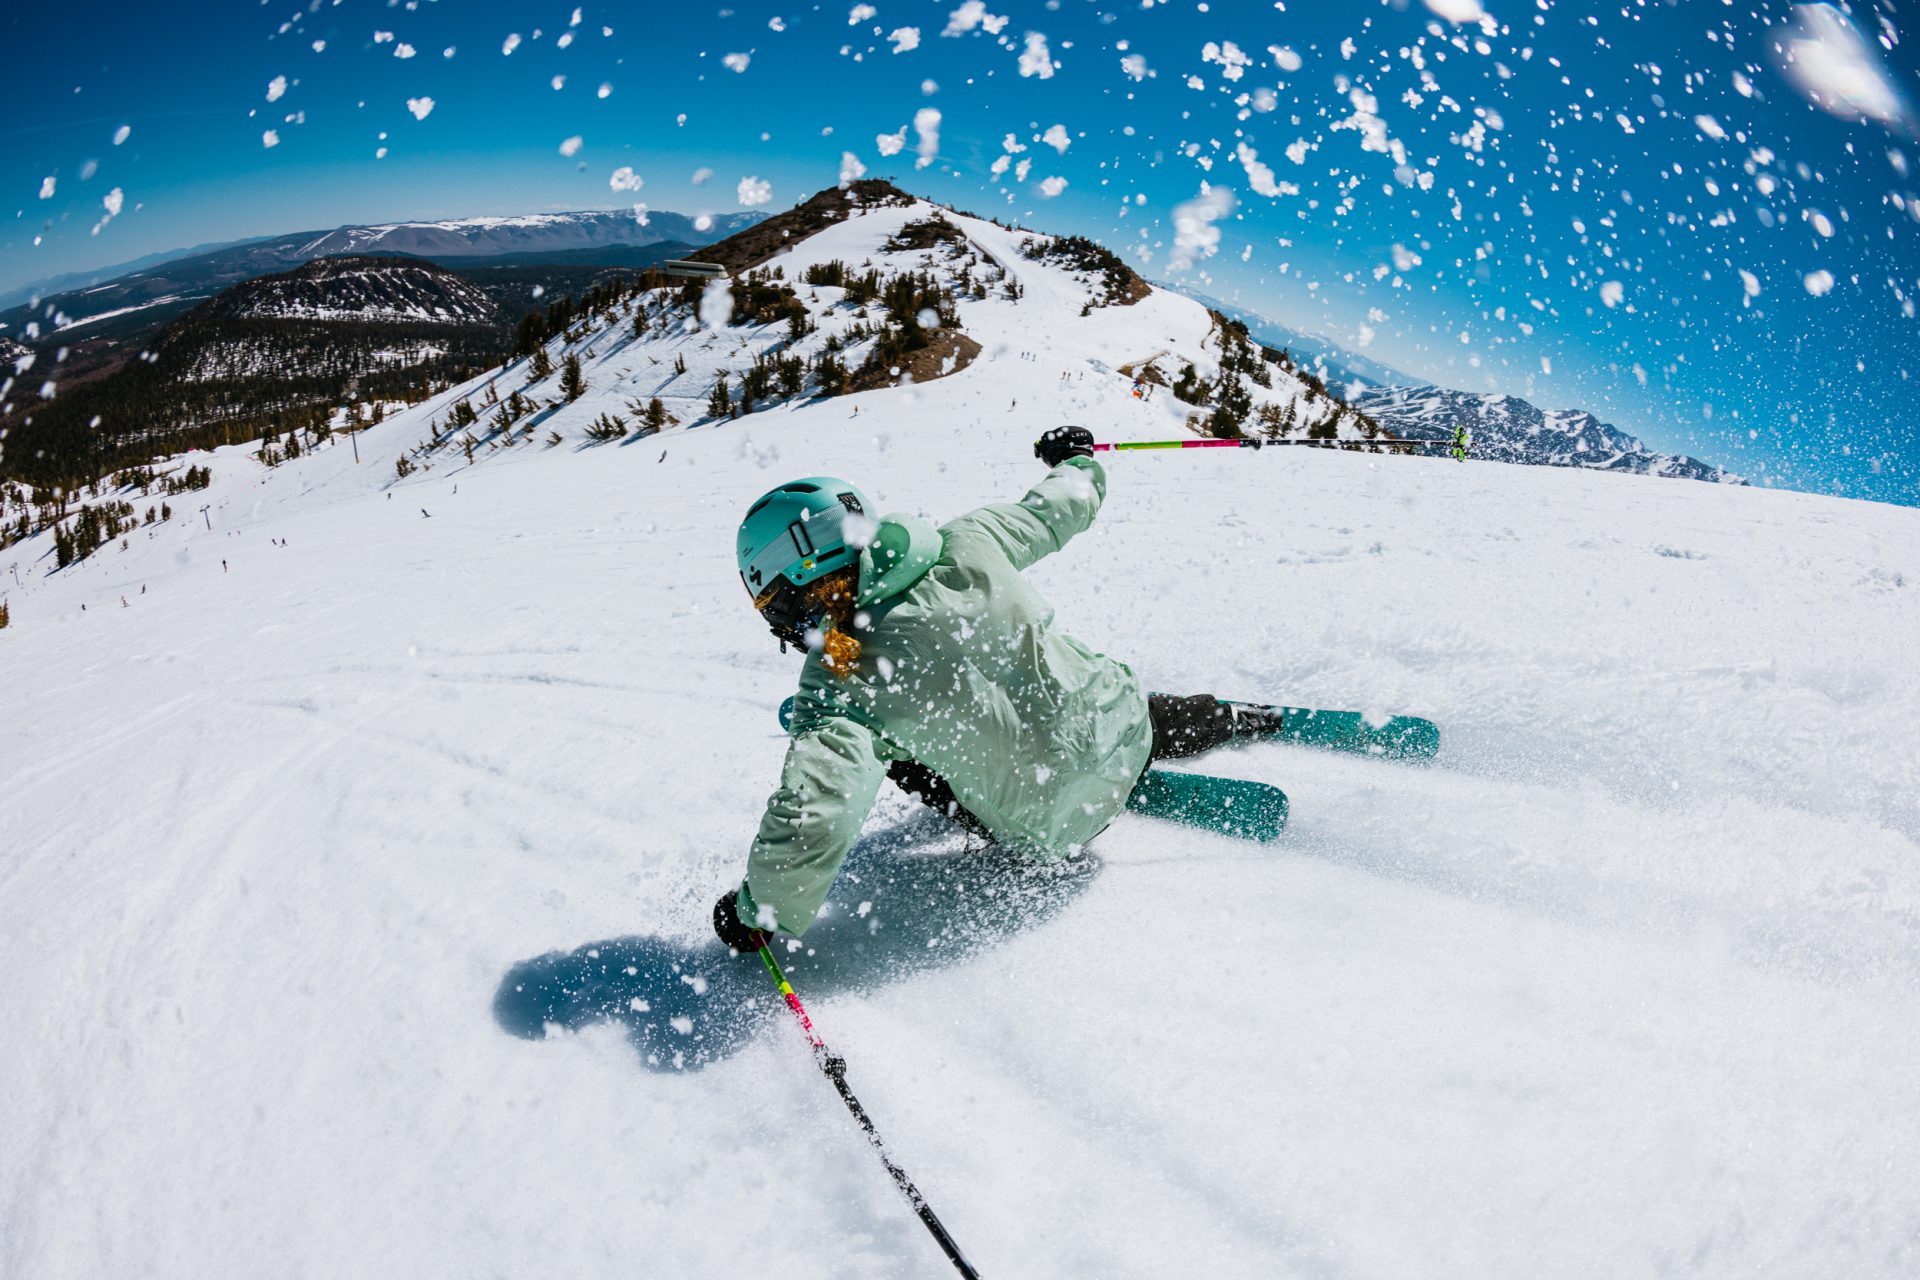 Esquiador descendo a montanha de neve durante a Segunda Temporada em Mammoth Mountain nesta primavera